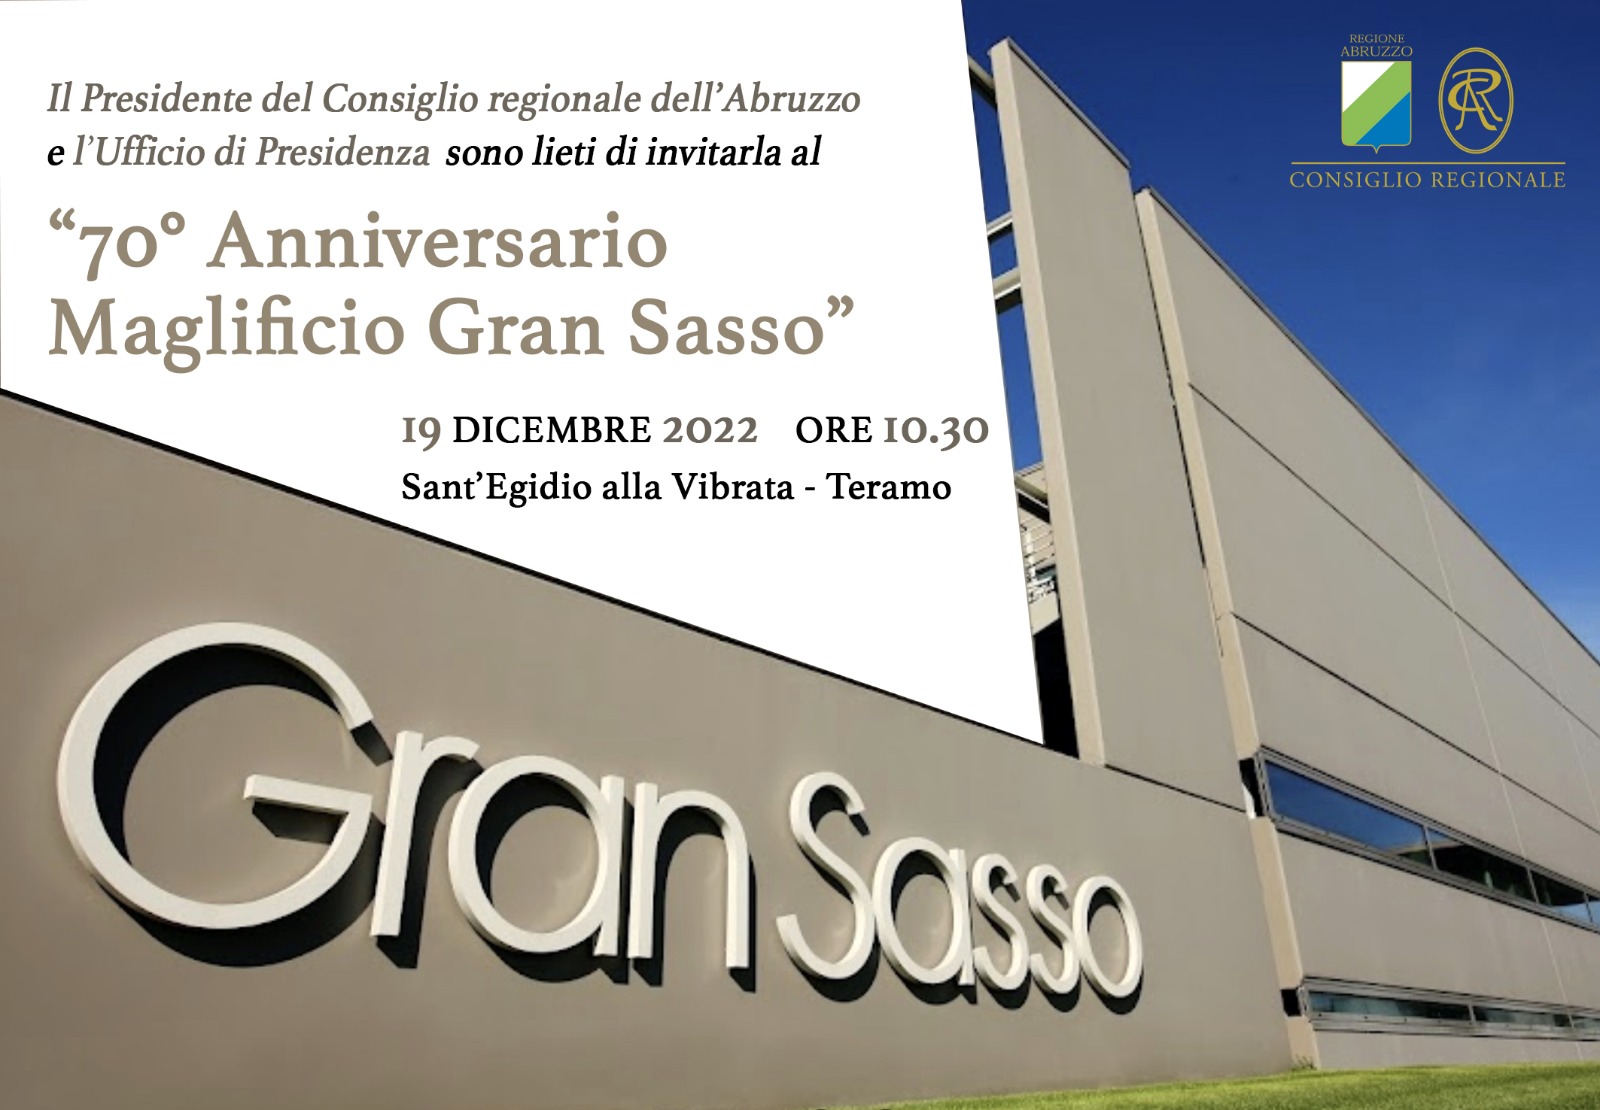 Abruzzo. Il Consiglio regionale celebra i 70 anni del “Maglificio Gran Sasso”